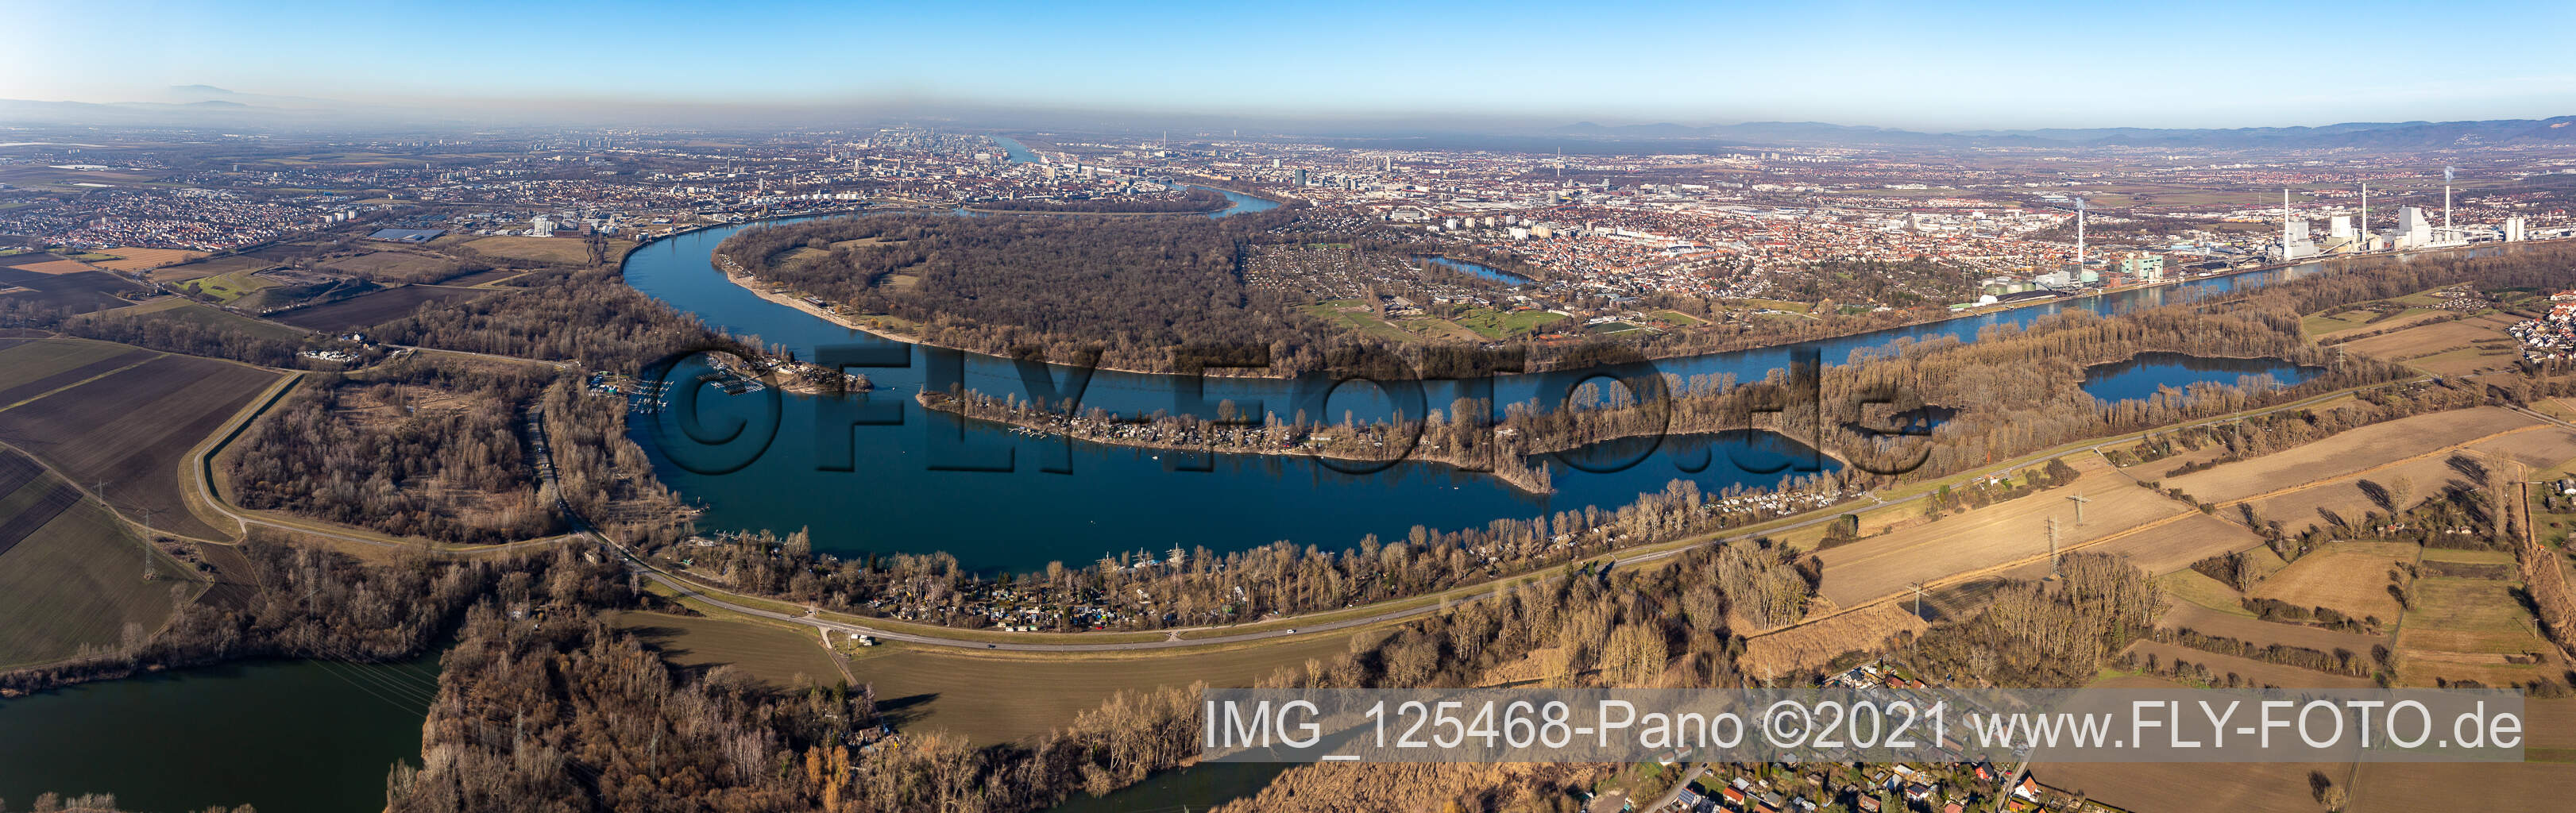 Vue aérienne de Perspective panoramique de la boucle des berges autour du Reißinsel près de Neckarau sur le Rhin - cours fluvial à le quartier Niederfeld in Mannheim dans le département Bade-Wurtemberg, Allemagne